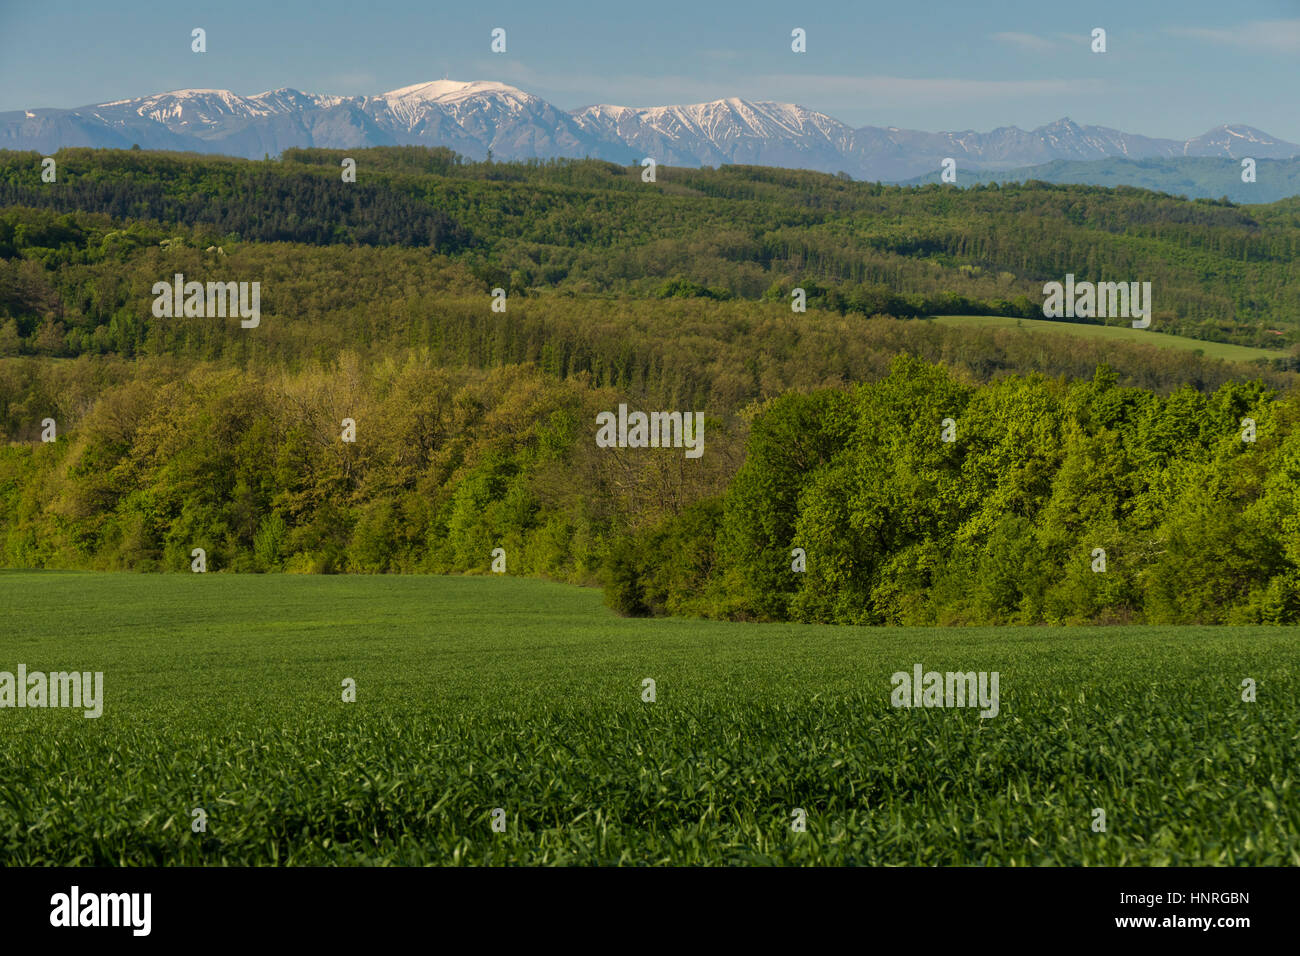 Des champs verts, forêts et collines avec hautes montagnes couvertes de neige dans la distance. Banque D'Images